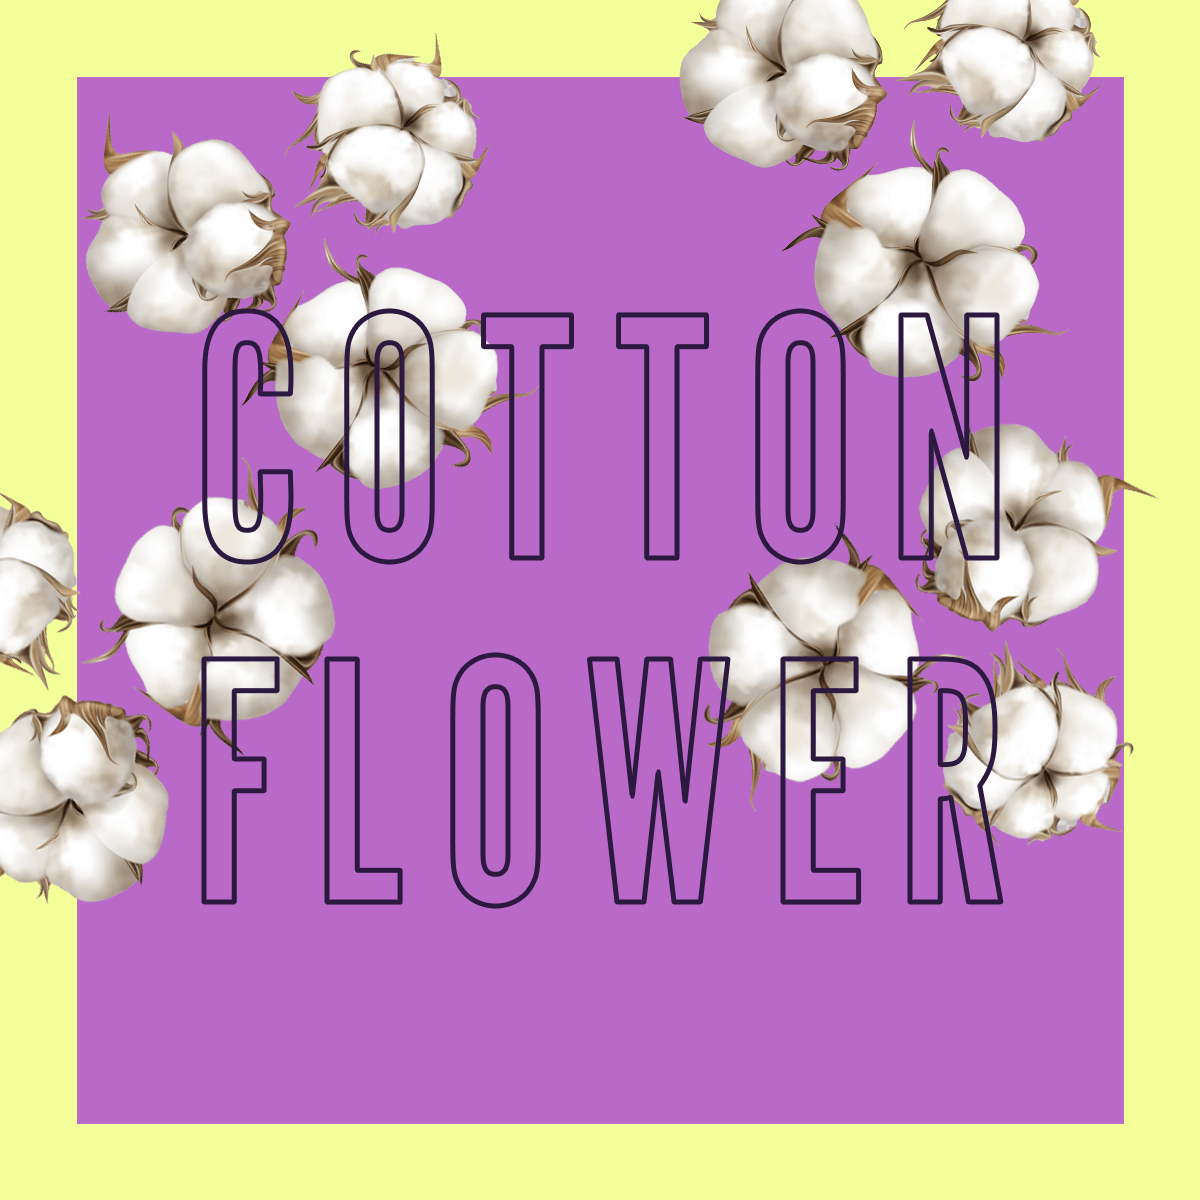 Edizione limitata del profumo Cotton Flower 10ml